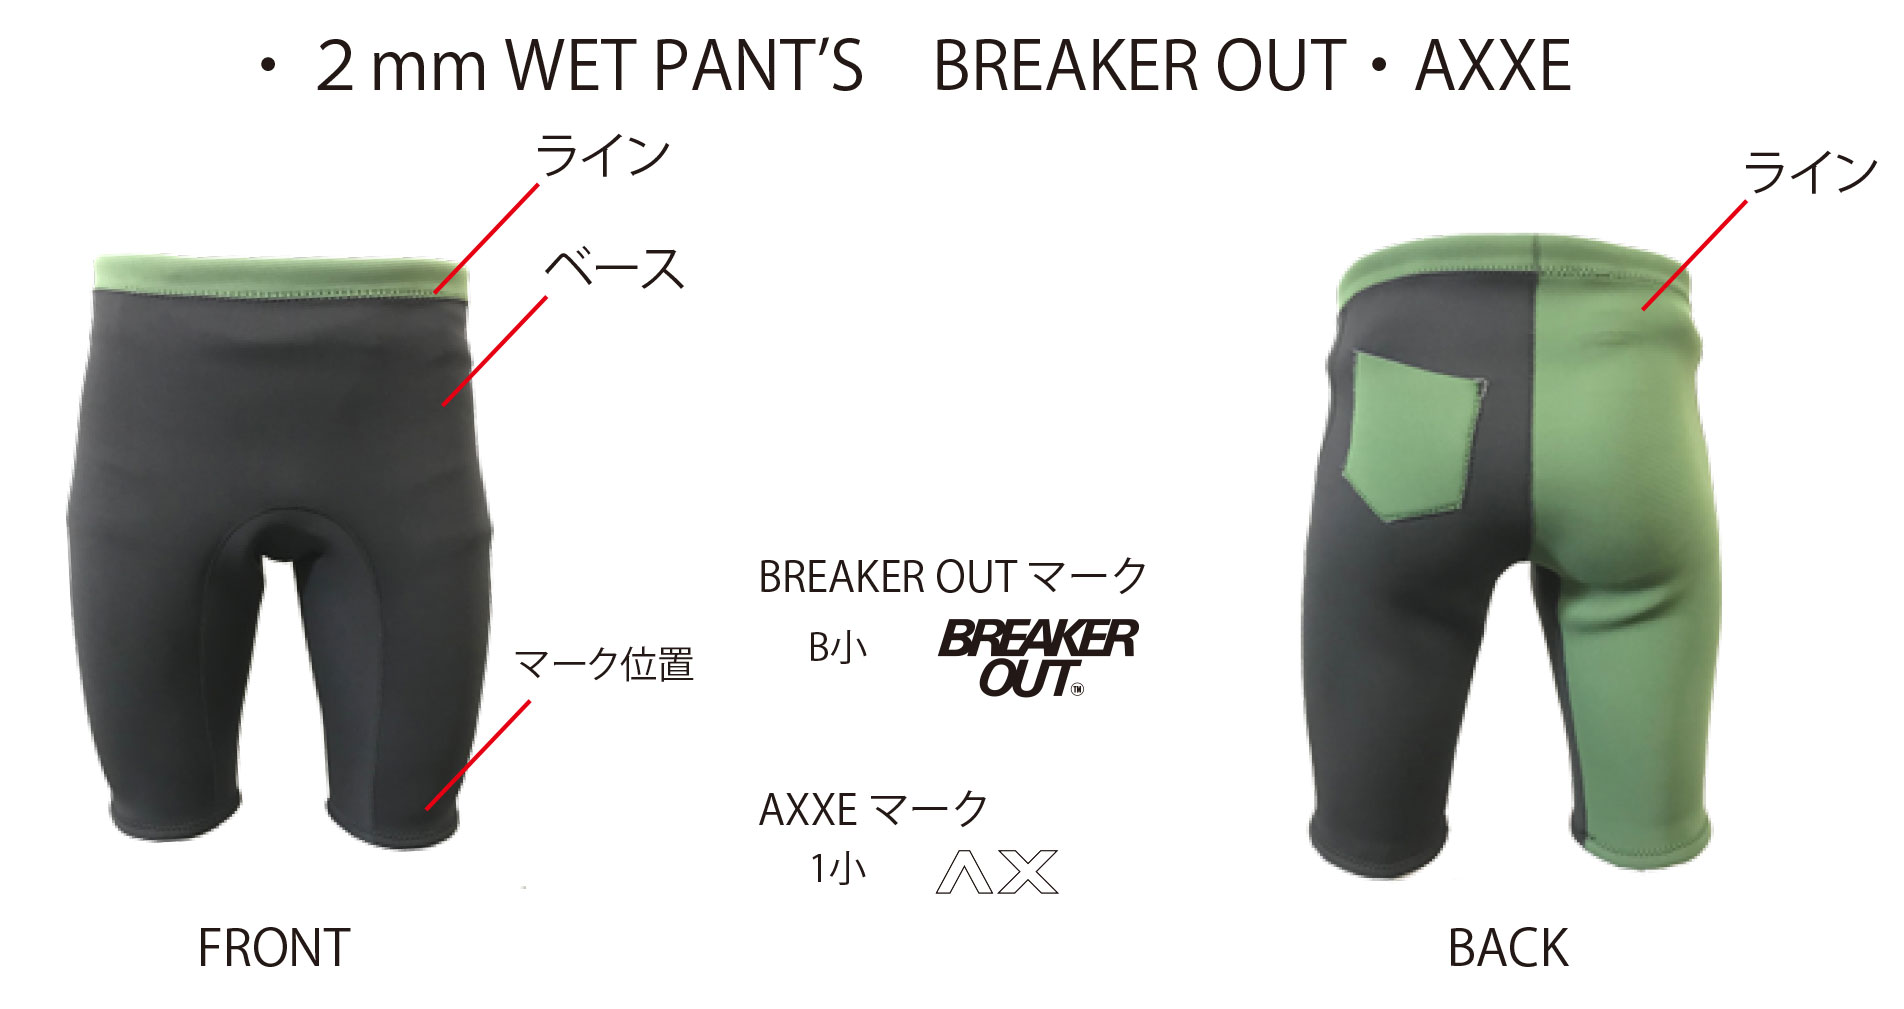 wet pants breaker out